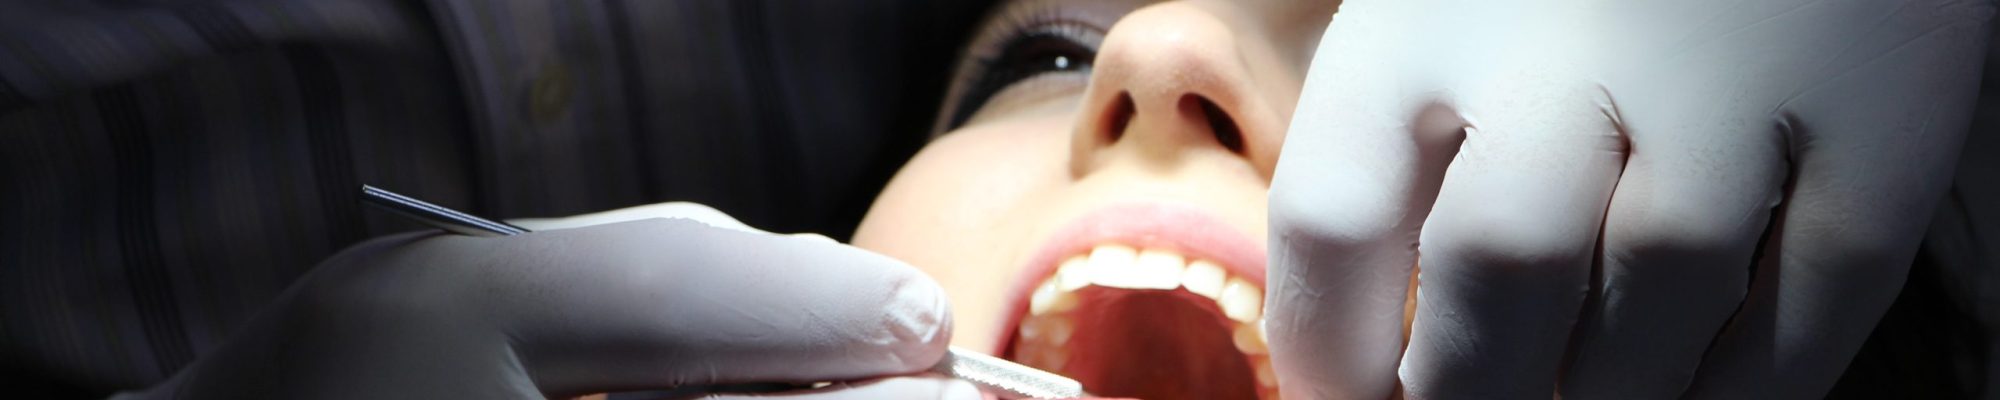 Paciente en una consulta odontológica